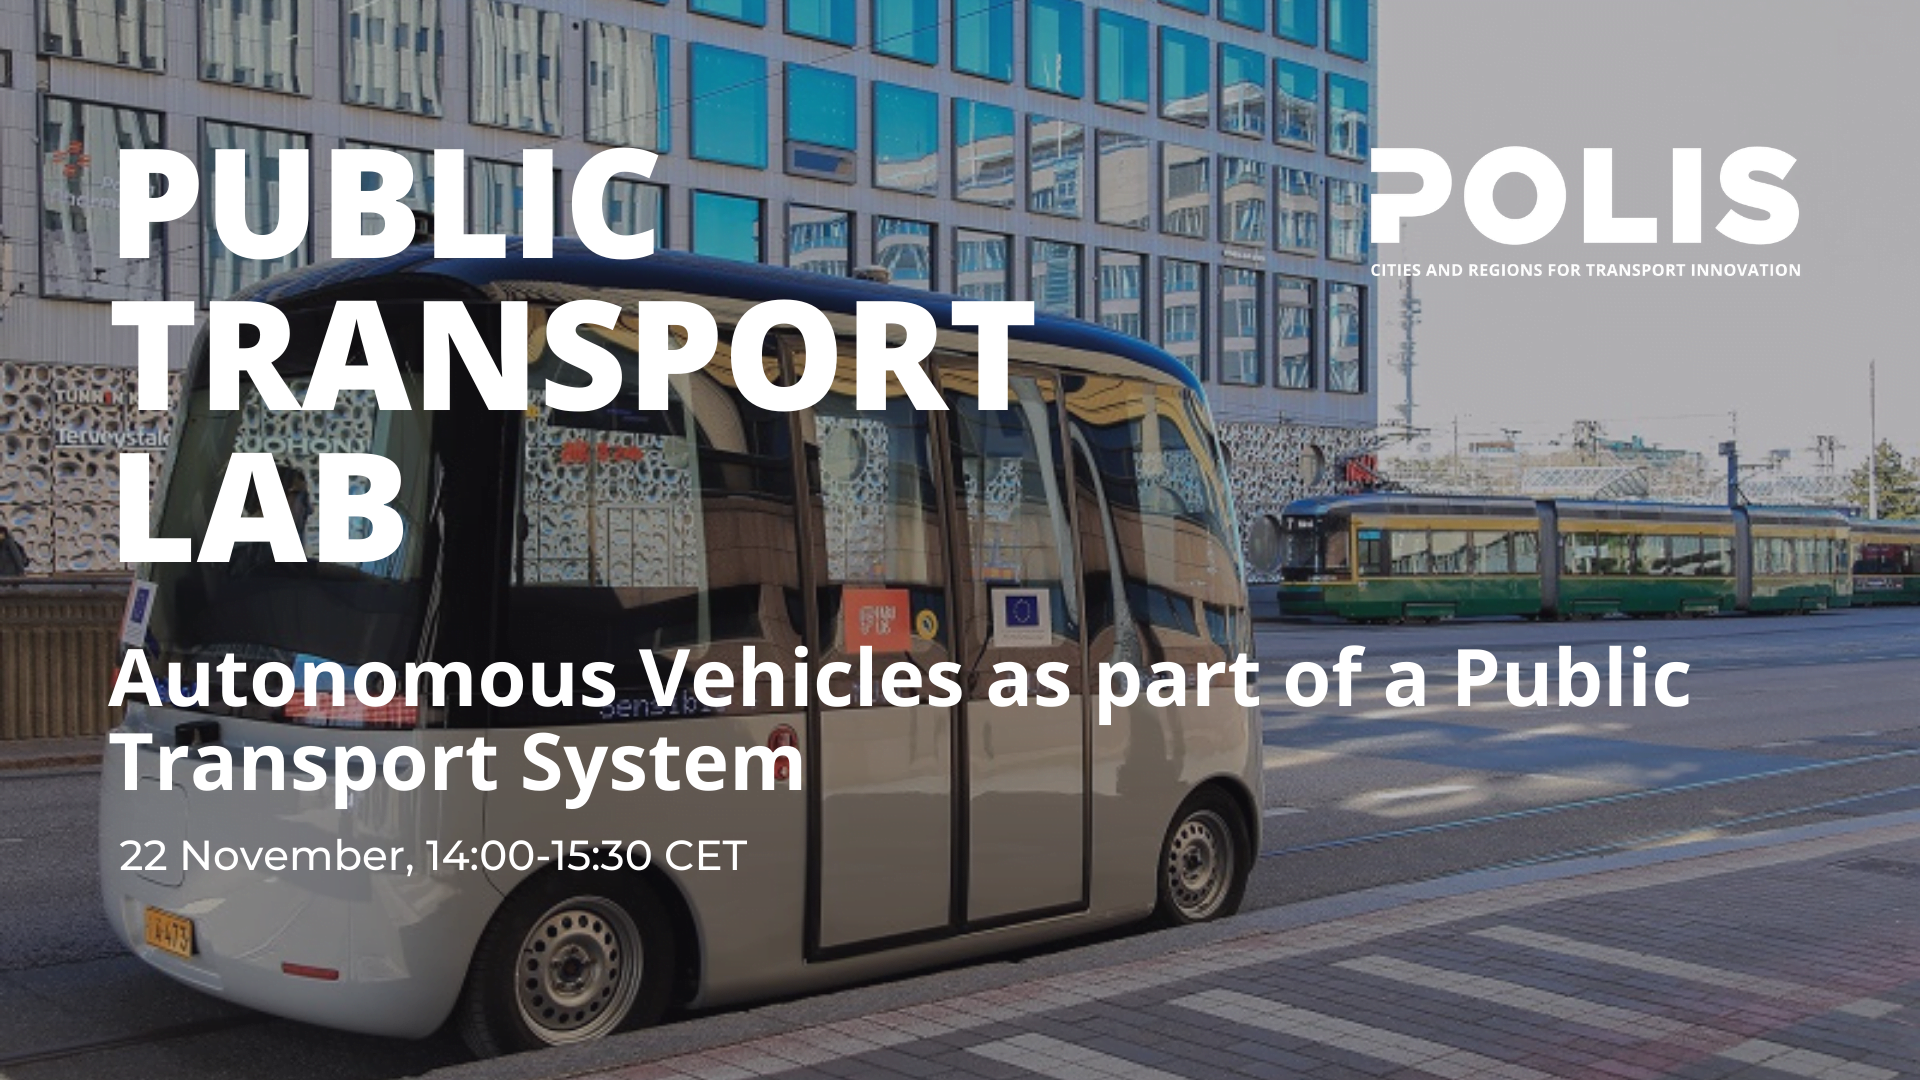 Public Transport Lab: Autonomous Vehicles as part of a Public Transport System